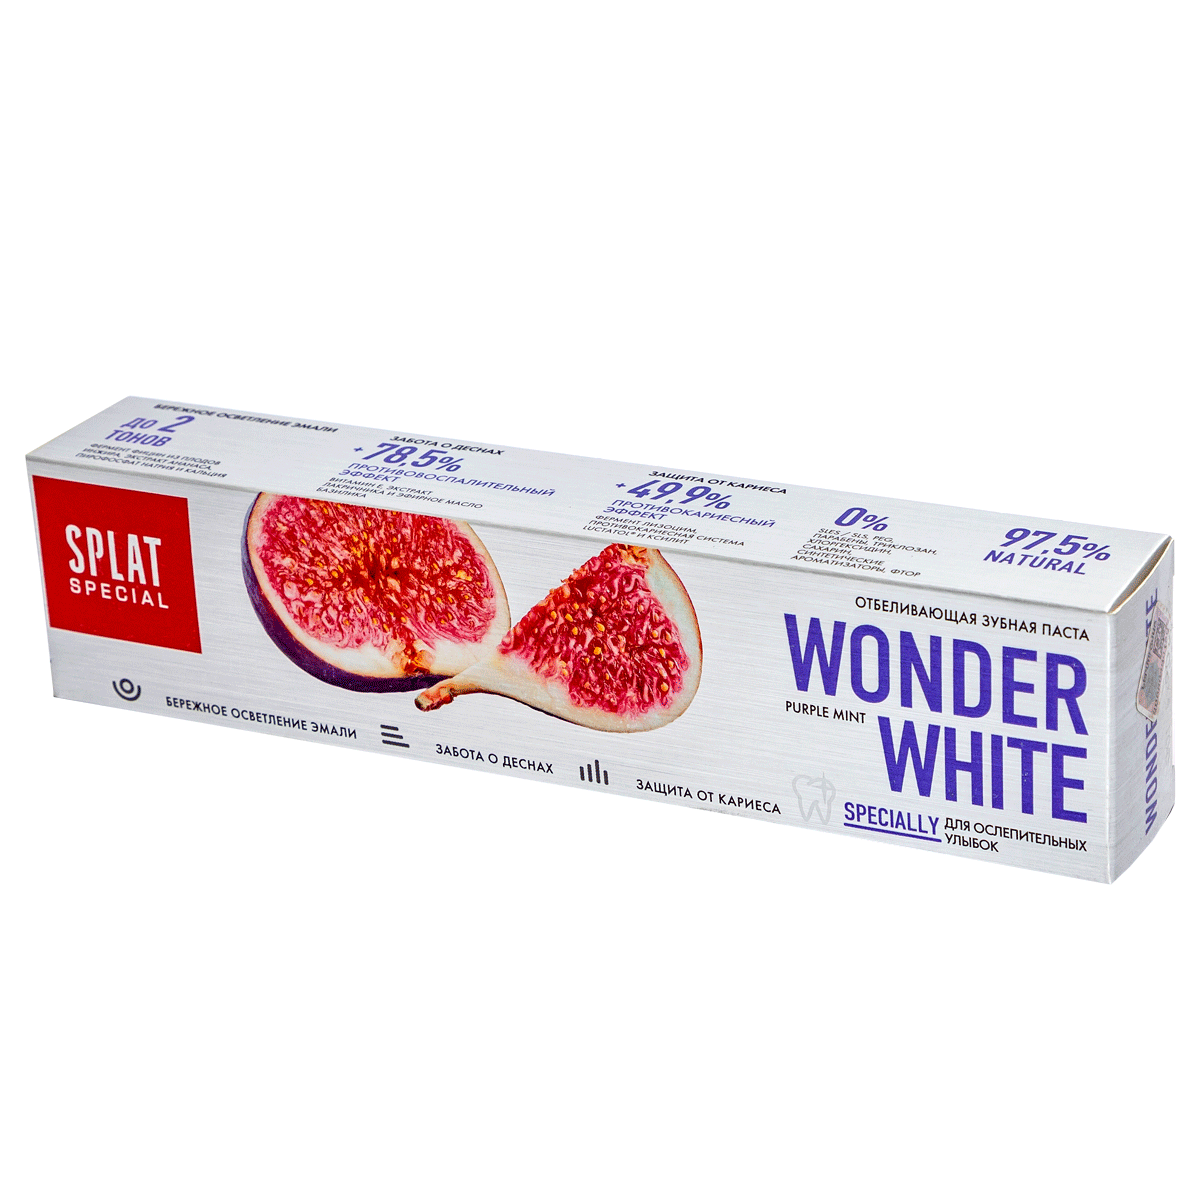 Ատամի մածուկ Splat   wonder white